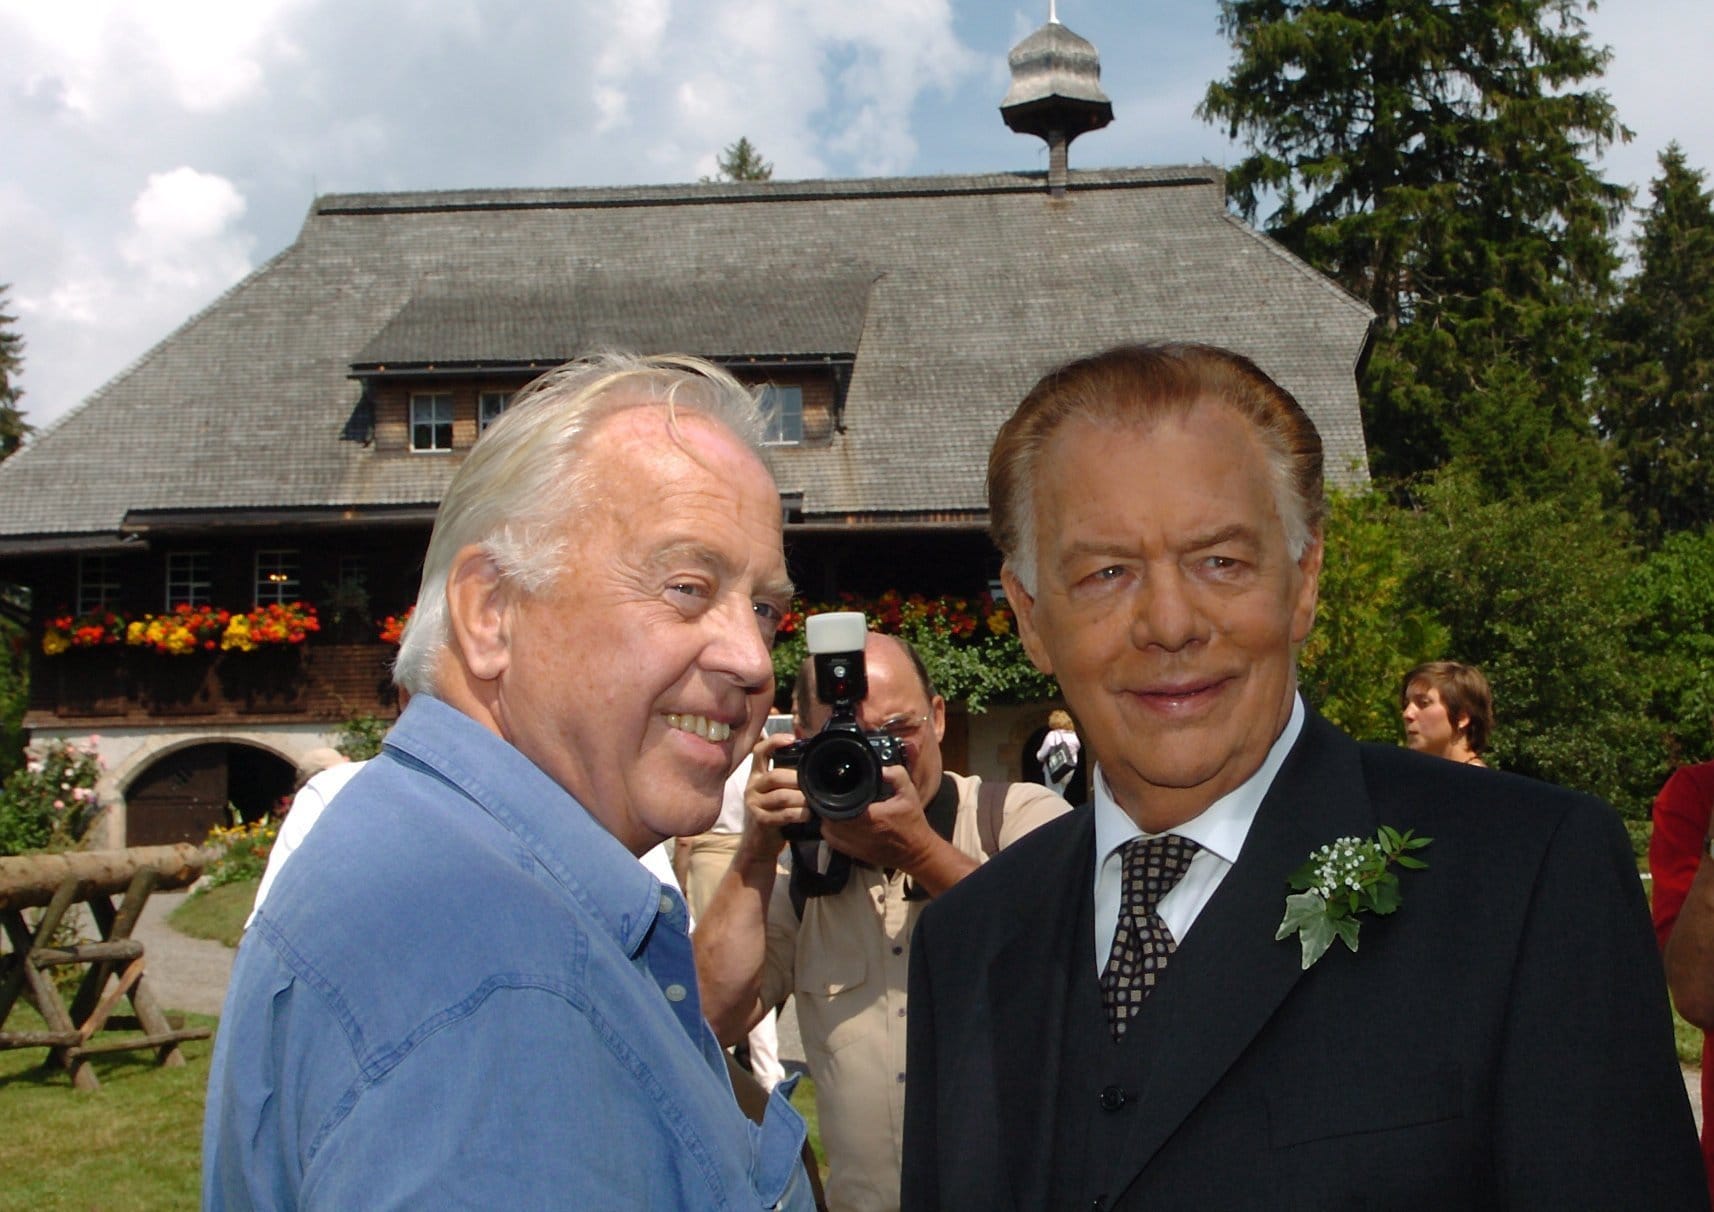 Rademann zusammen mit dem 2007 verstorbenen Klausjürgen Wussow, der in der TV-Serie "Die Schwarzwaldklinik" als Professor Brinkmann zu sehen war.